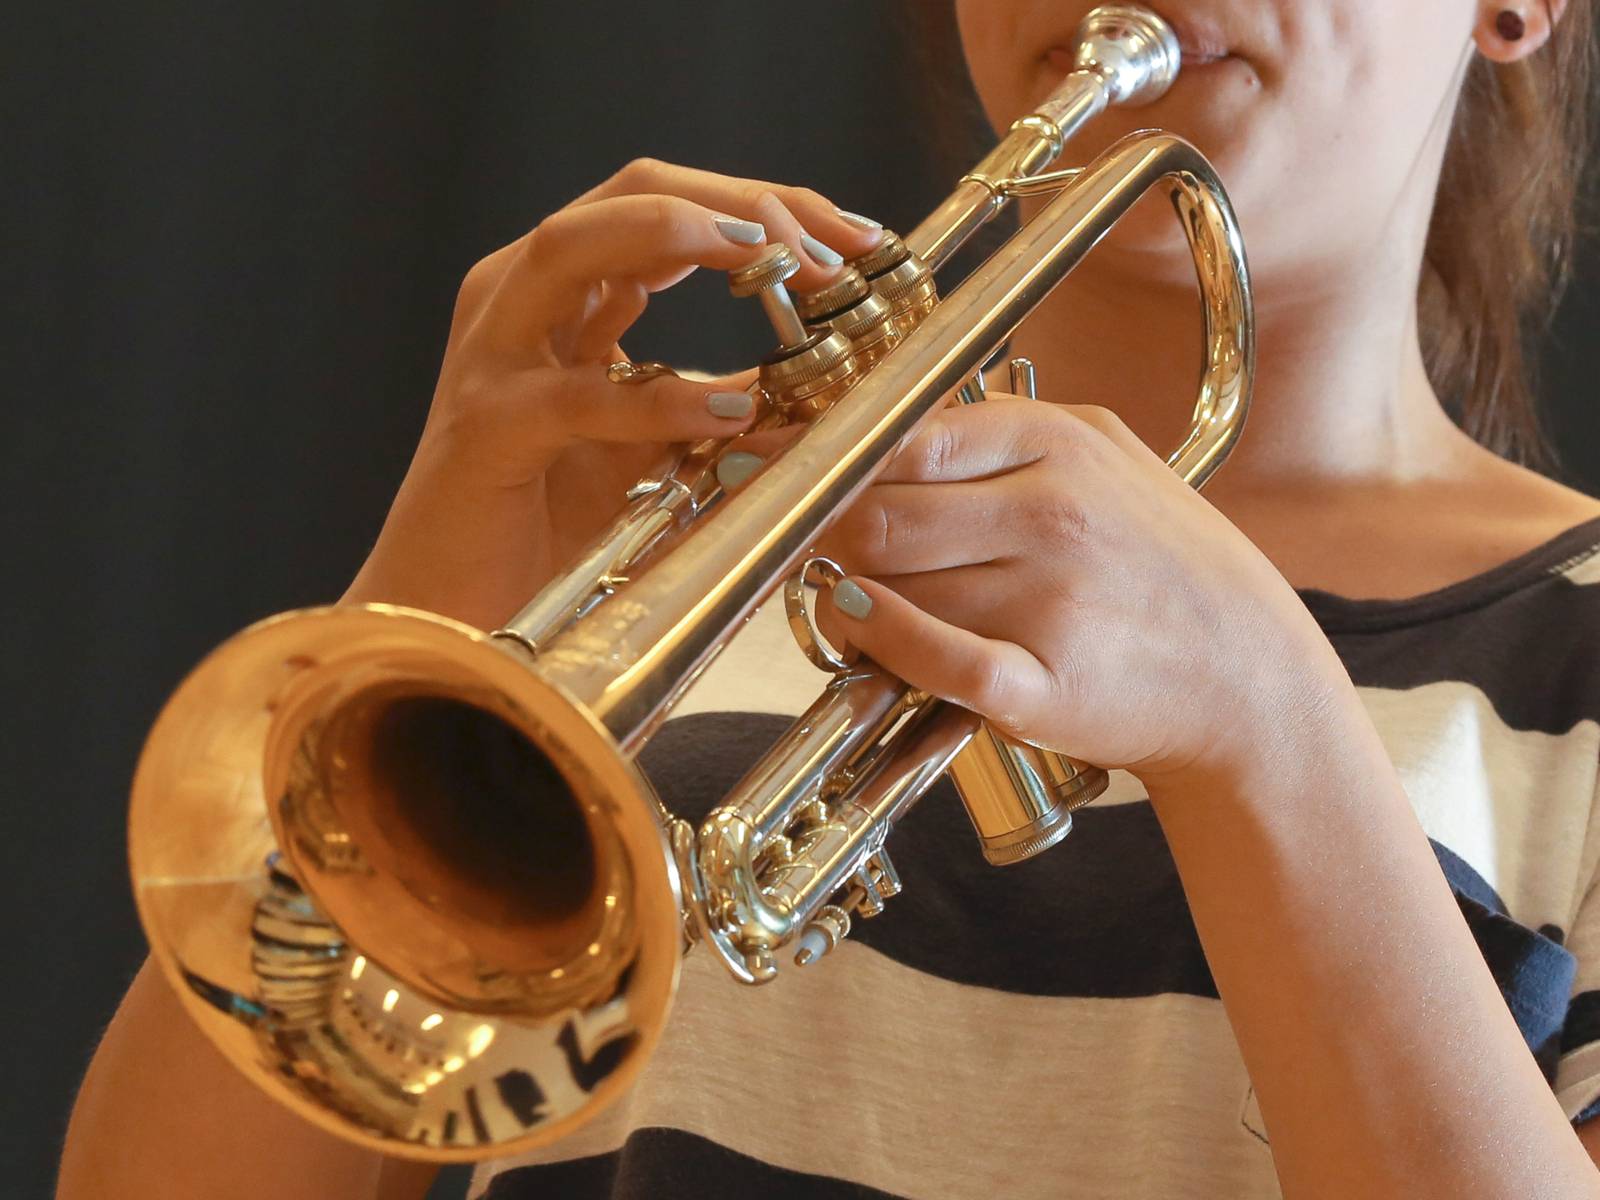 Jazz-Trompete, Instrumente & Gesang, Unterricht, Musikschule der  Landeshauptstadt Hannover, Musikalische Bildung, Lernen außerschulisch, Bildung